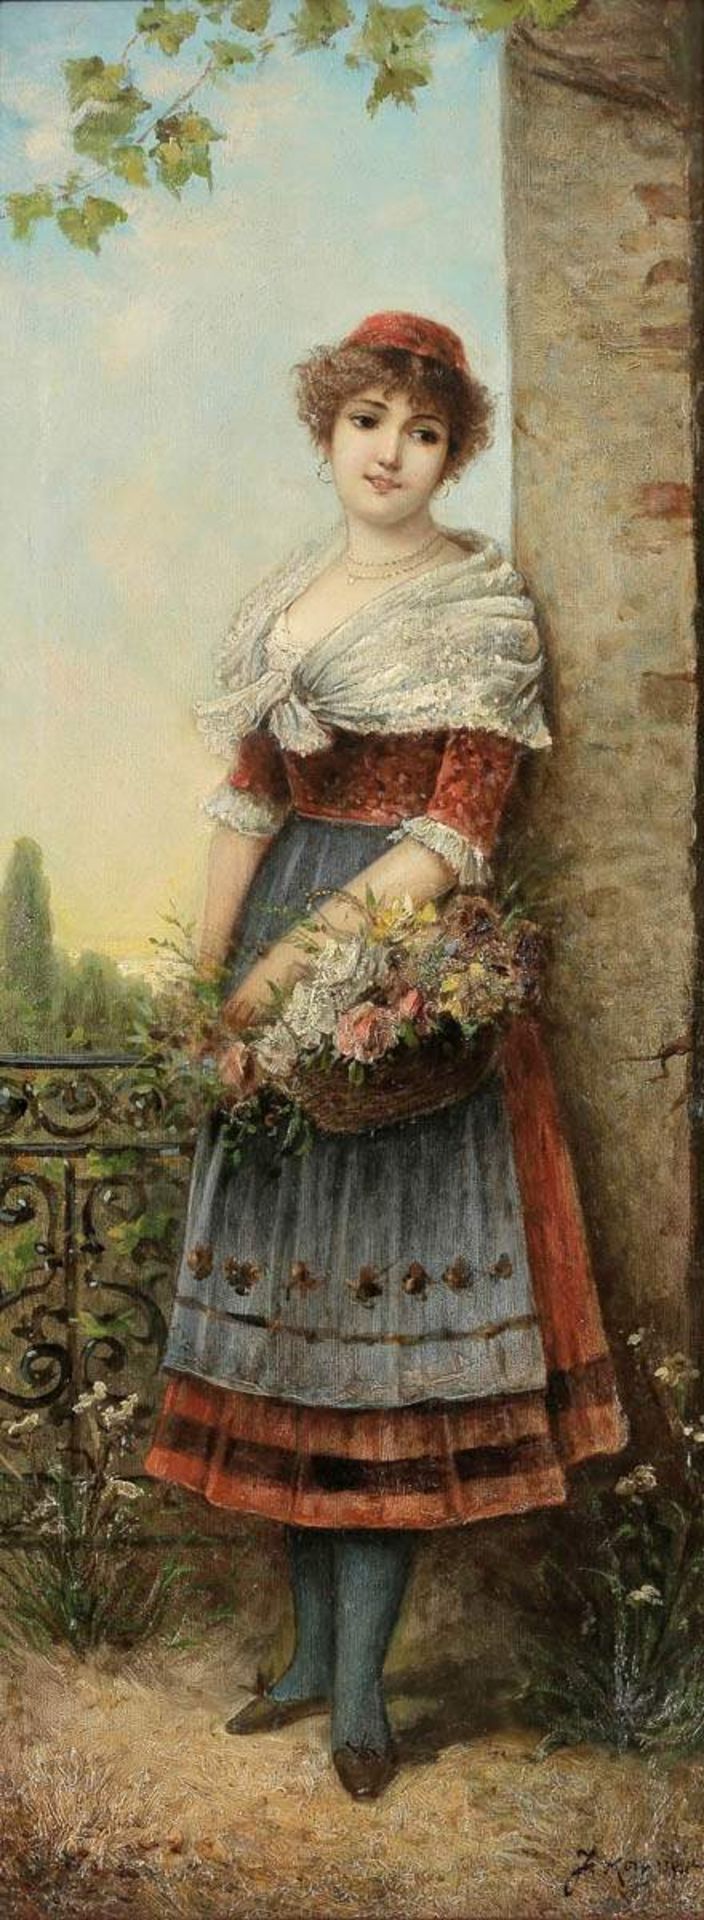 Julius KahrerKünstler um 1900 - Mädchen mit Blumenkorb - Öl/Lwd. 84,5 x 34 cm. Sign. r. u.: J. Ka(